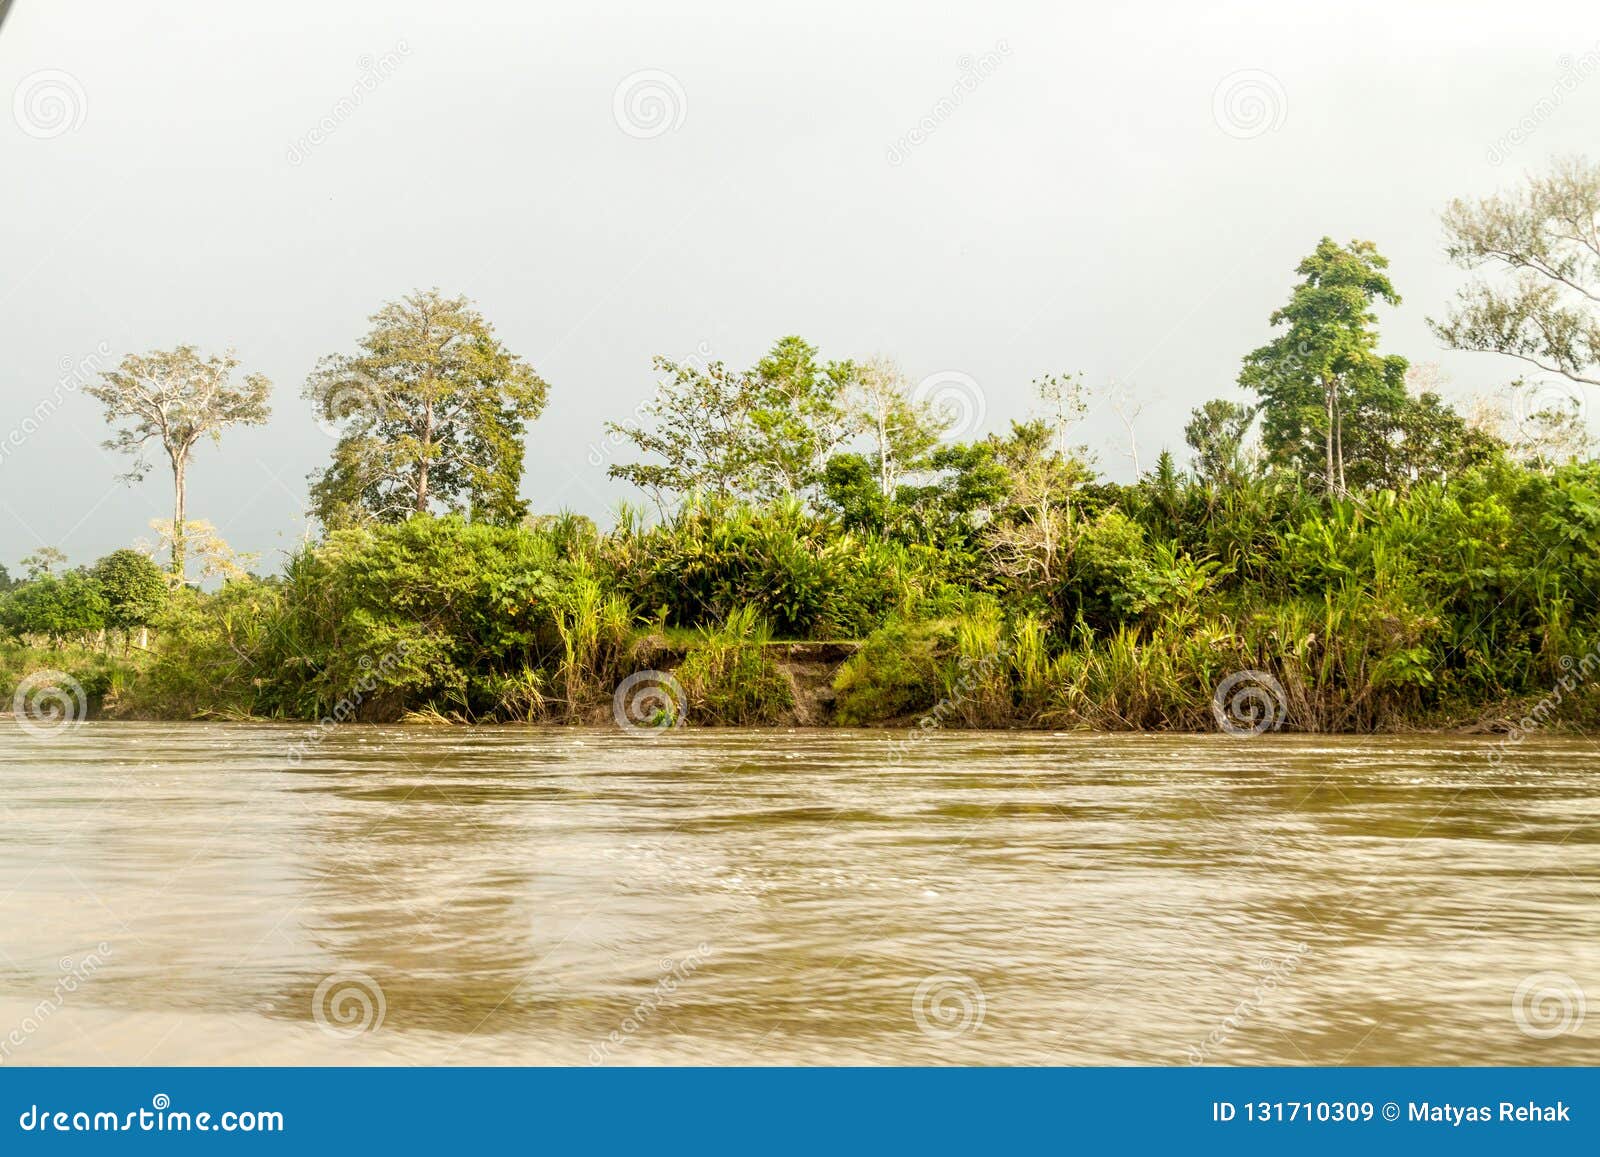 jungle along river napo